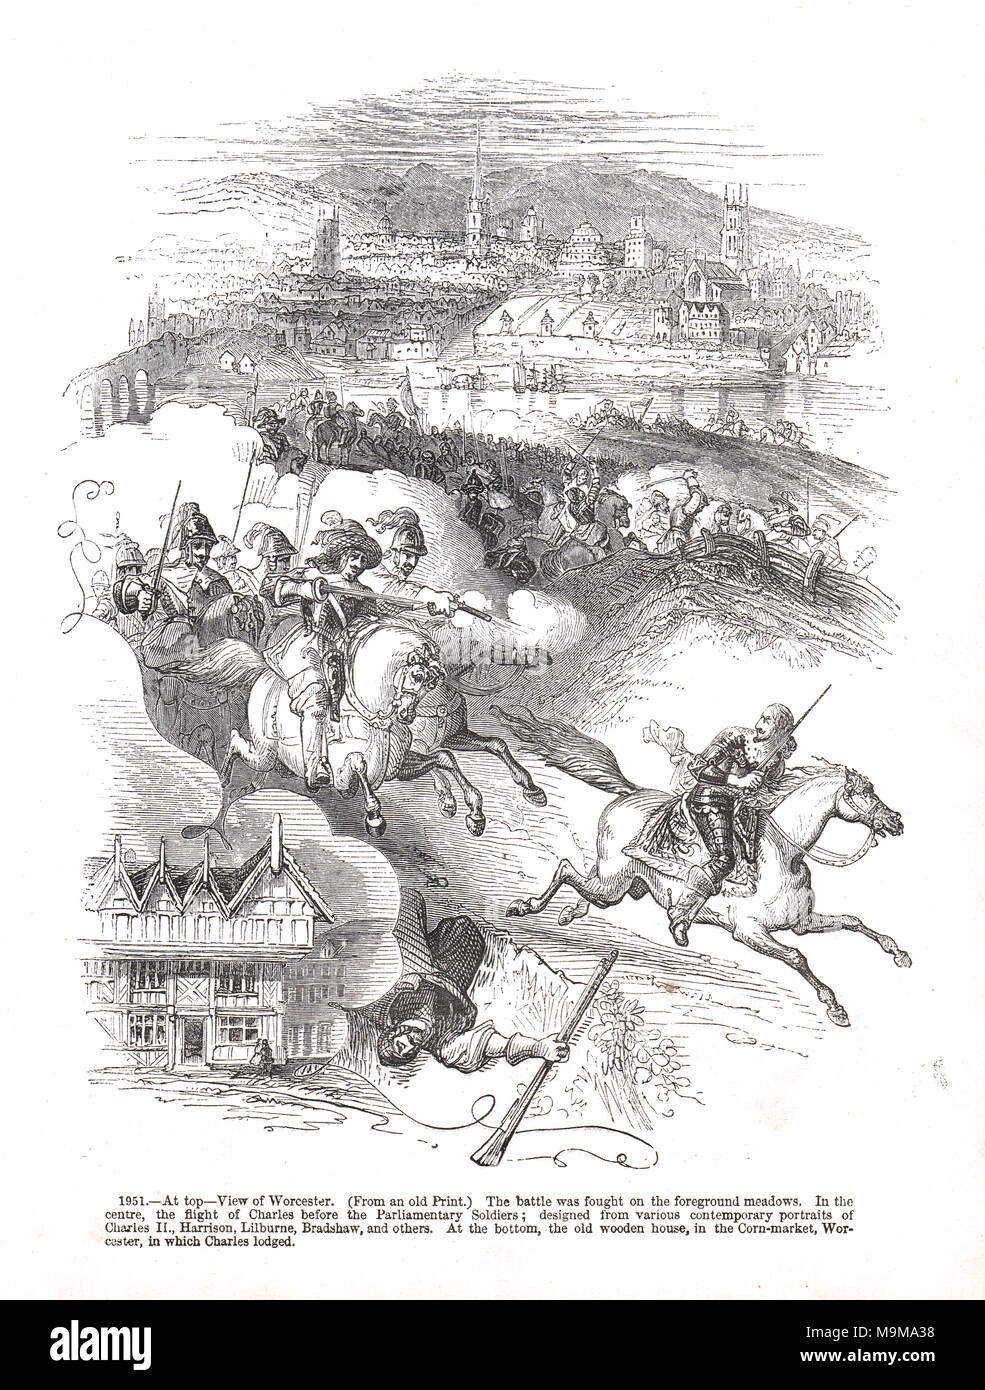 Der Flug von Karl II. die Abgeordneten Soldaten verfolgt, die Schlacht von Worcester, 3. September 1651 Stockfoto